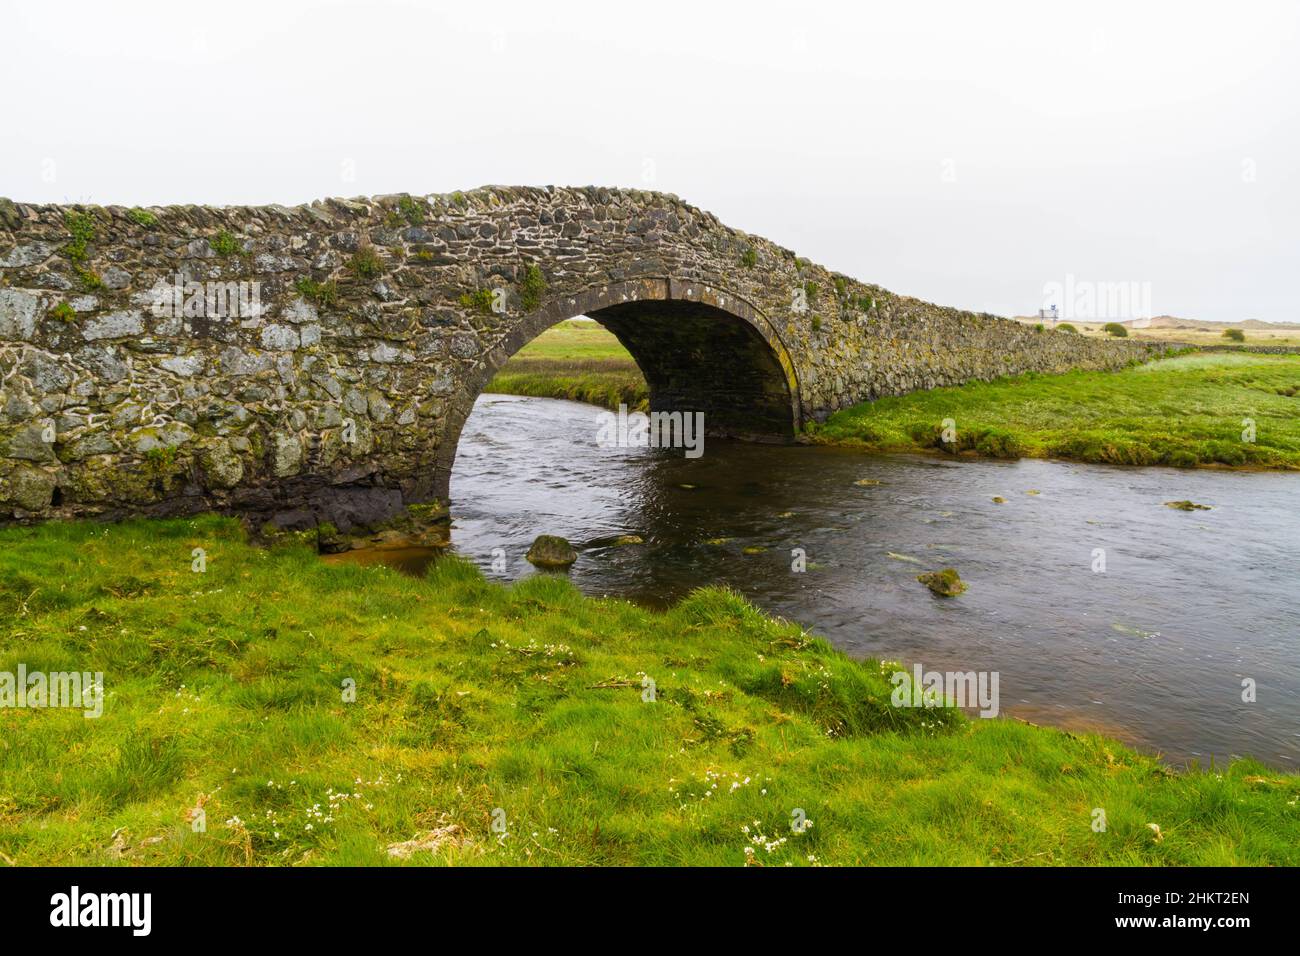 Old hump-backed bridge Pont Pont Aberffraw on Anglesey, Wales UK, landscape Stock Photo